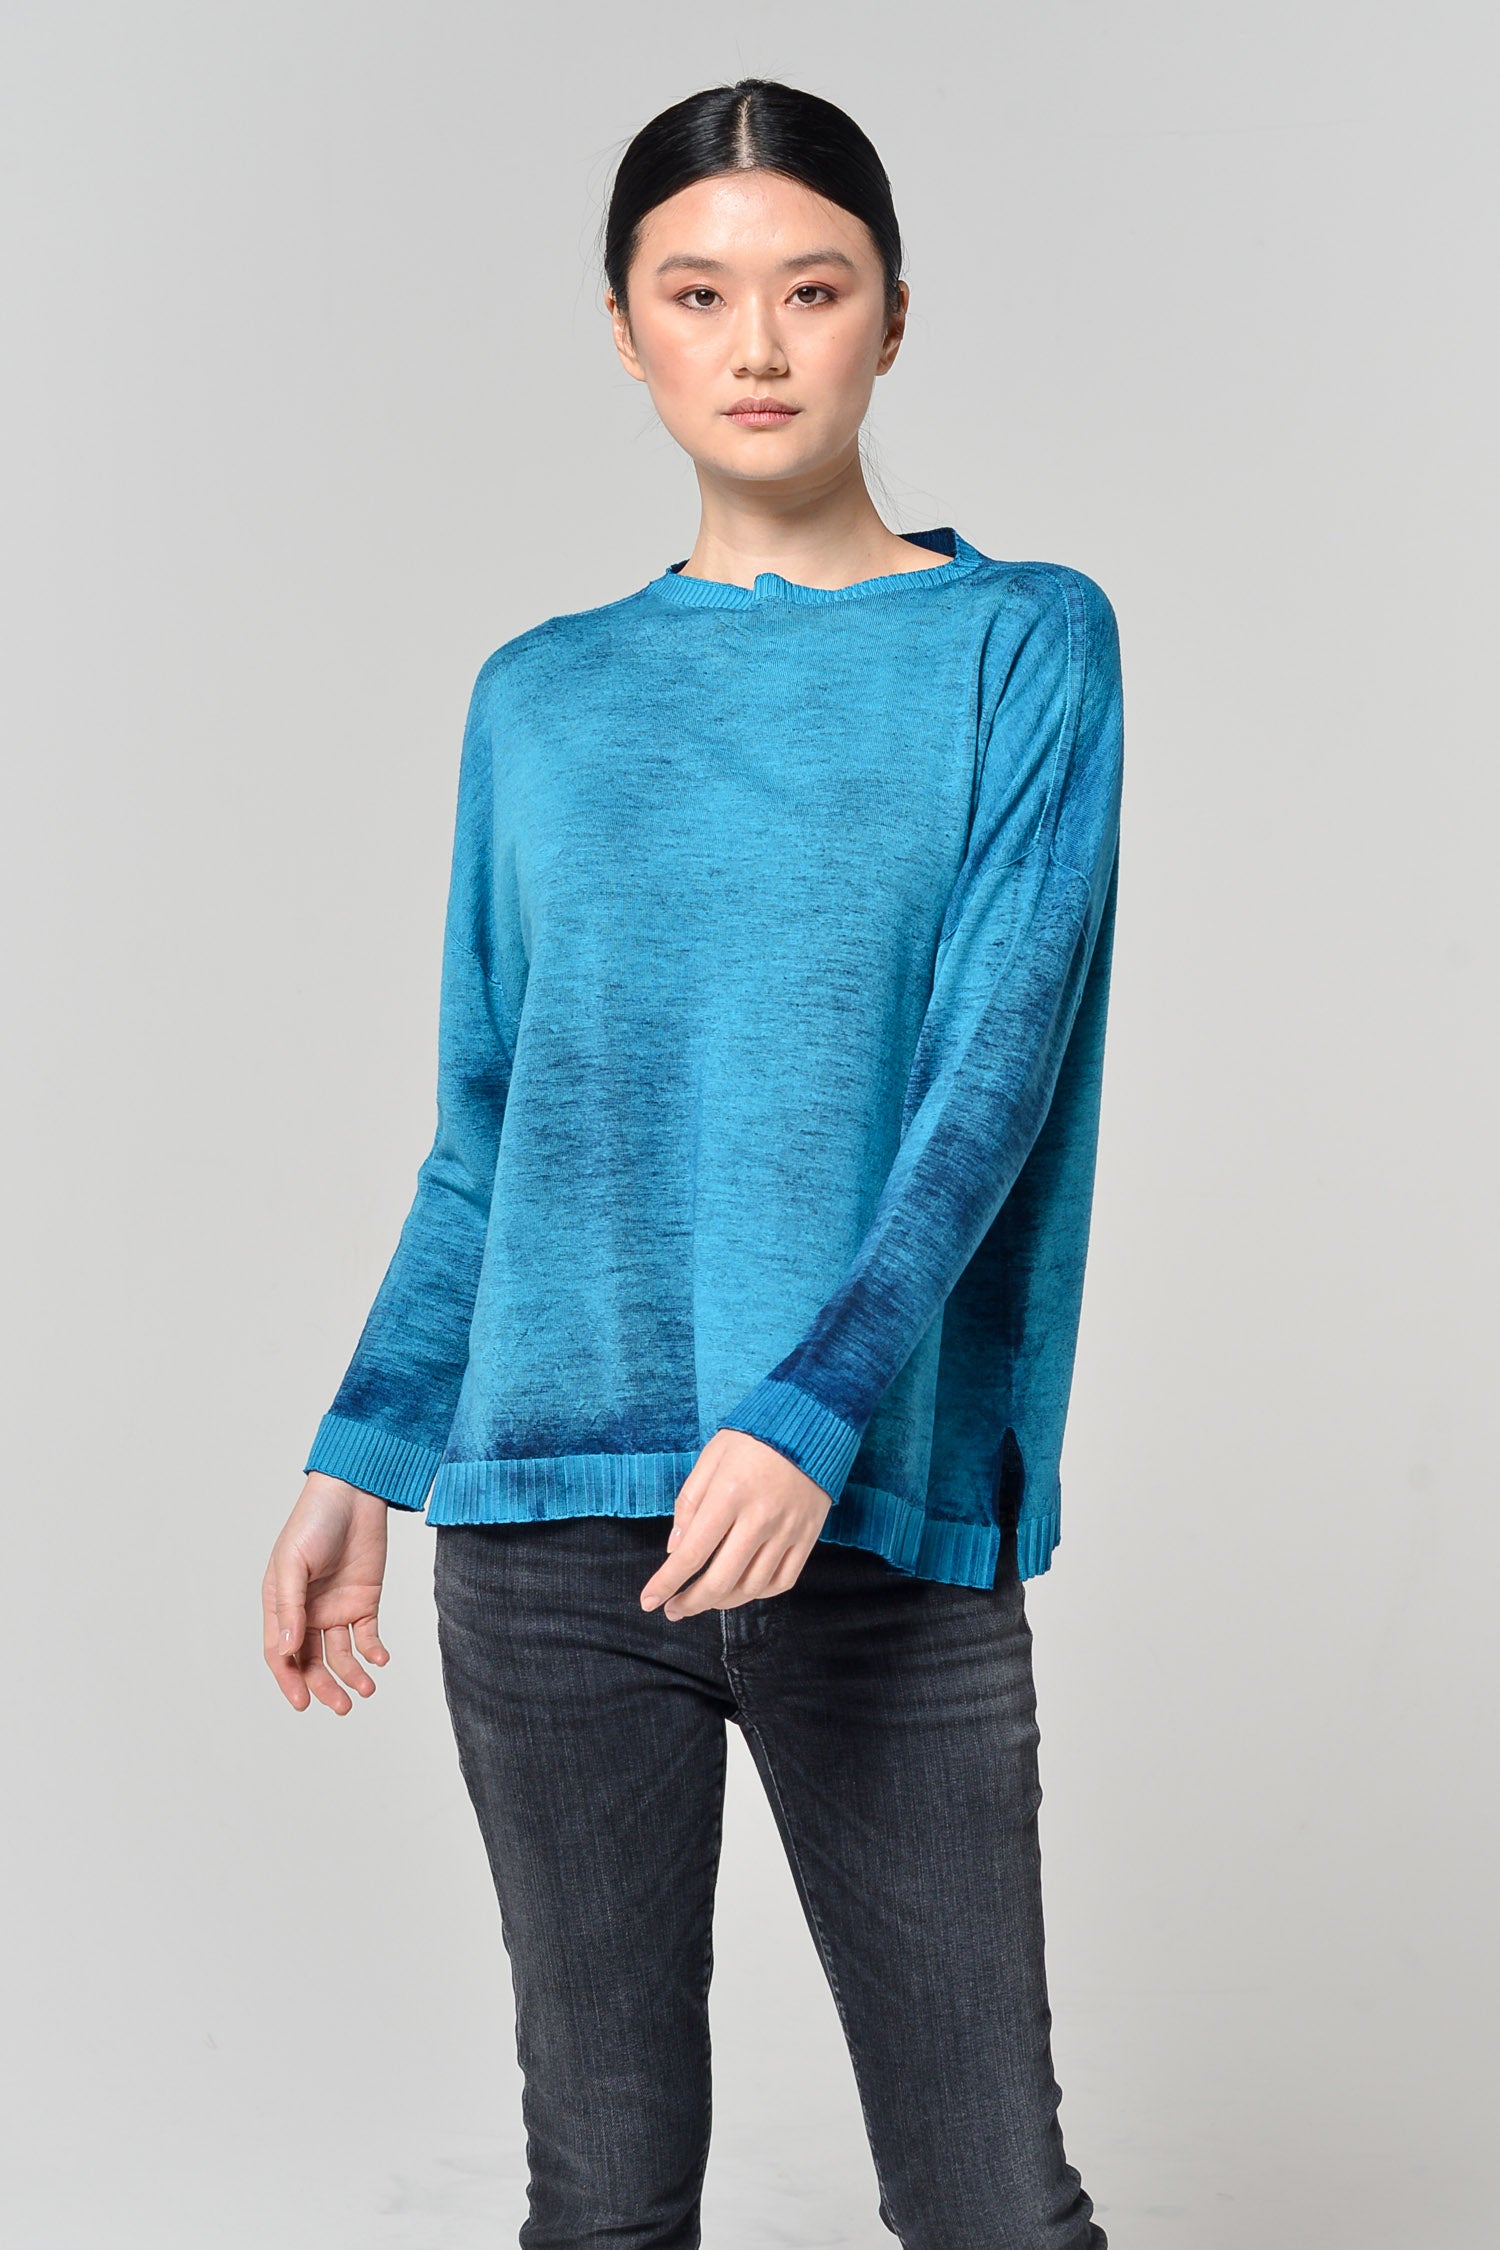 Melro Rock Art Sweater - Kimber